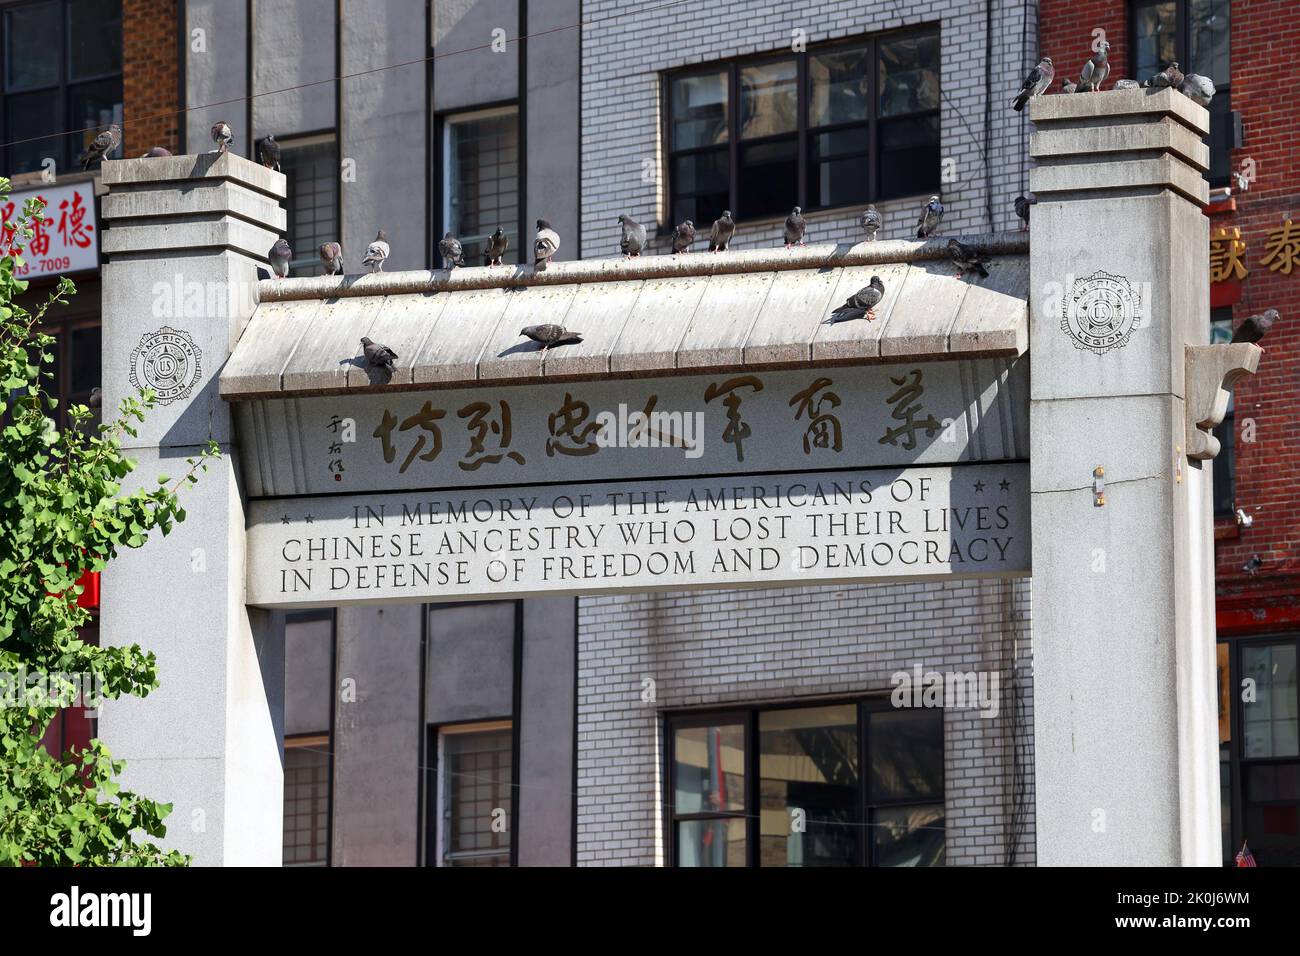 L'Arche commémorative Kimlau rend hommage aux anciens combattants chinois américains à Kimlau Square/Chatham Sq, dans le quartier chinois de Manhattan, New York. Banque D'Images